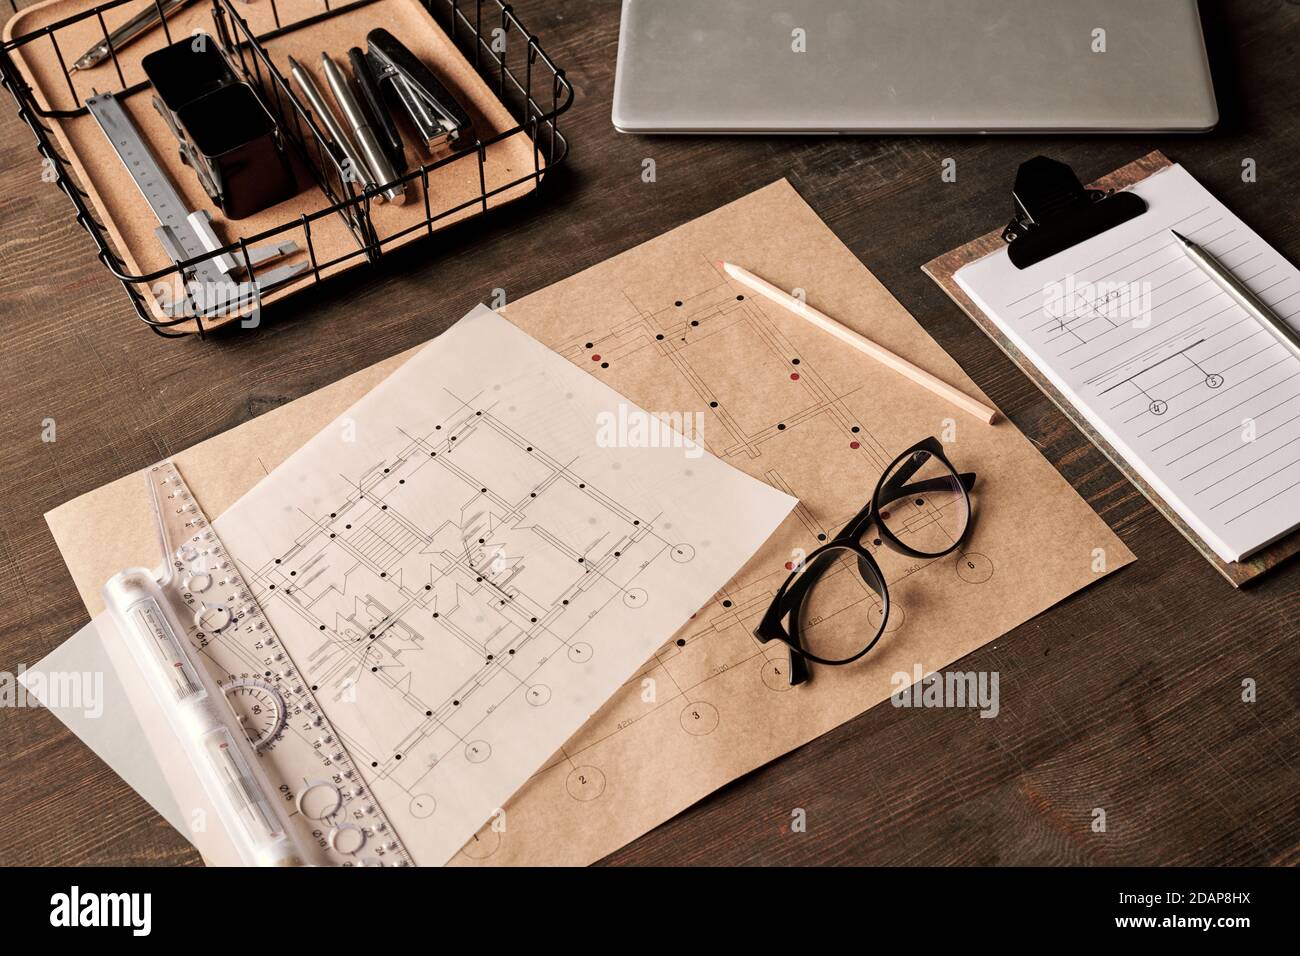 Fournitures de bureau et outils à main dans un panier, un crayon, un stylo  sur le presse-papiers avec des papiers Photo Stock - Alamy